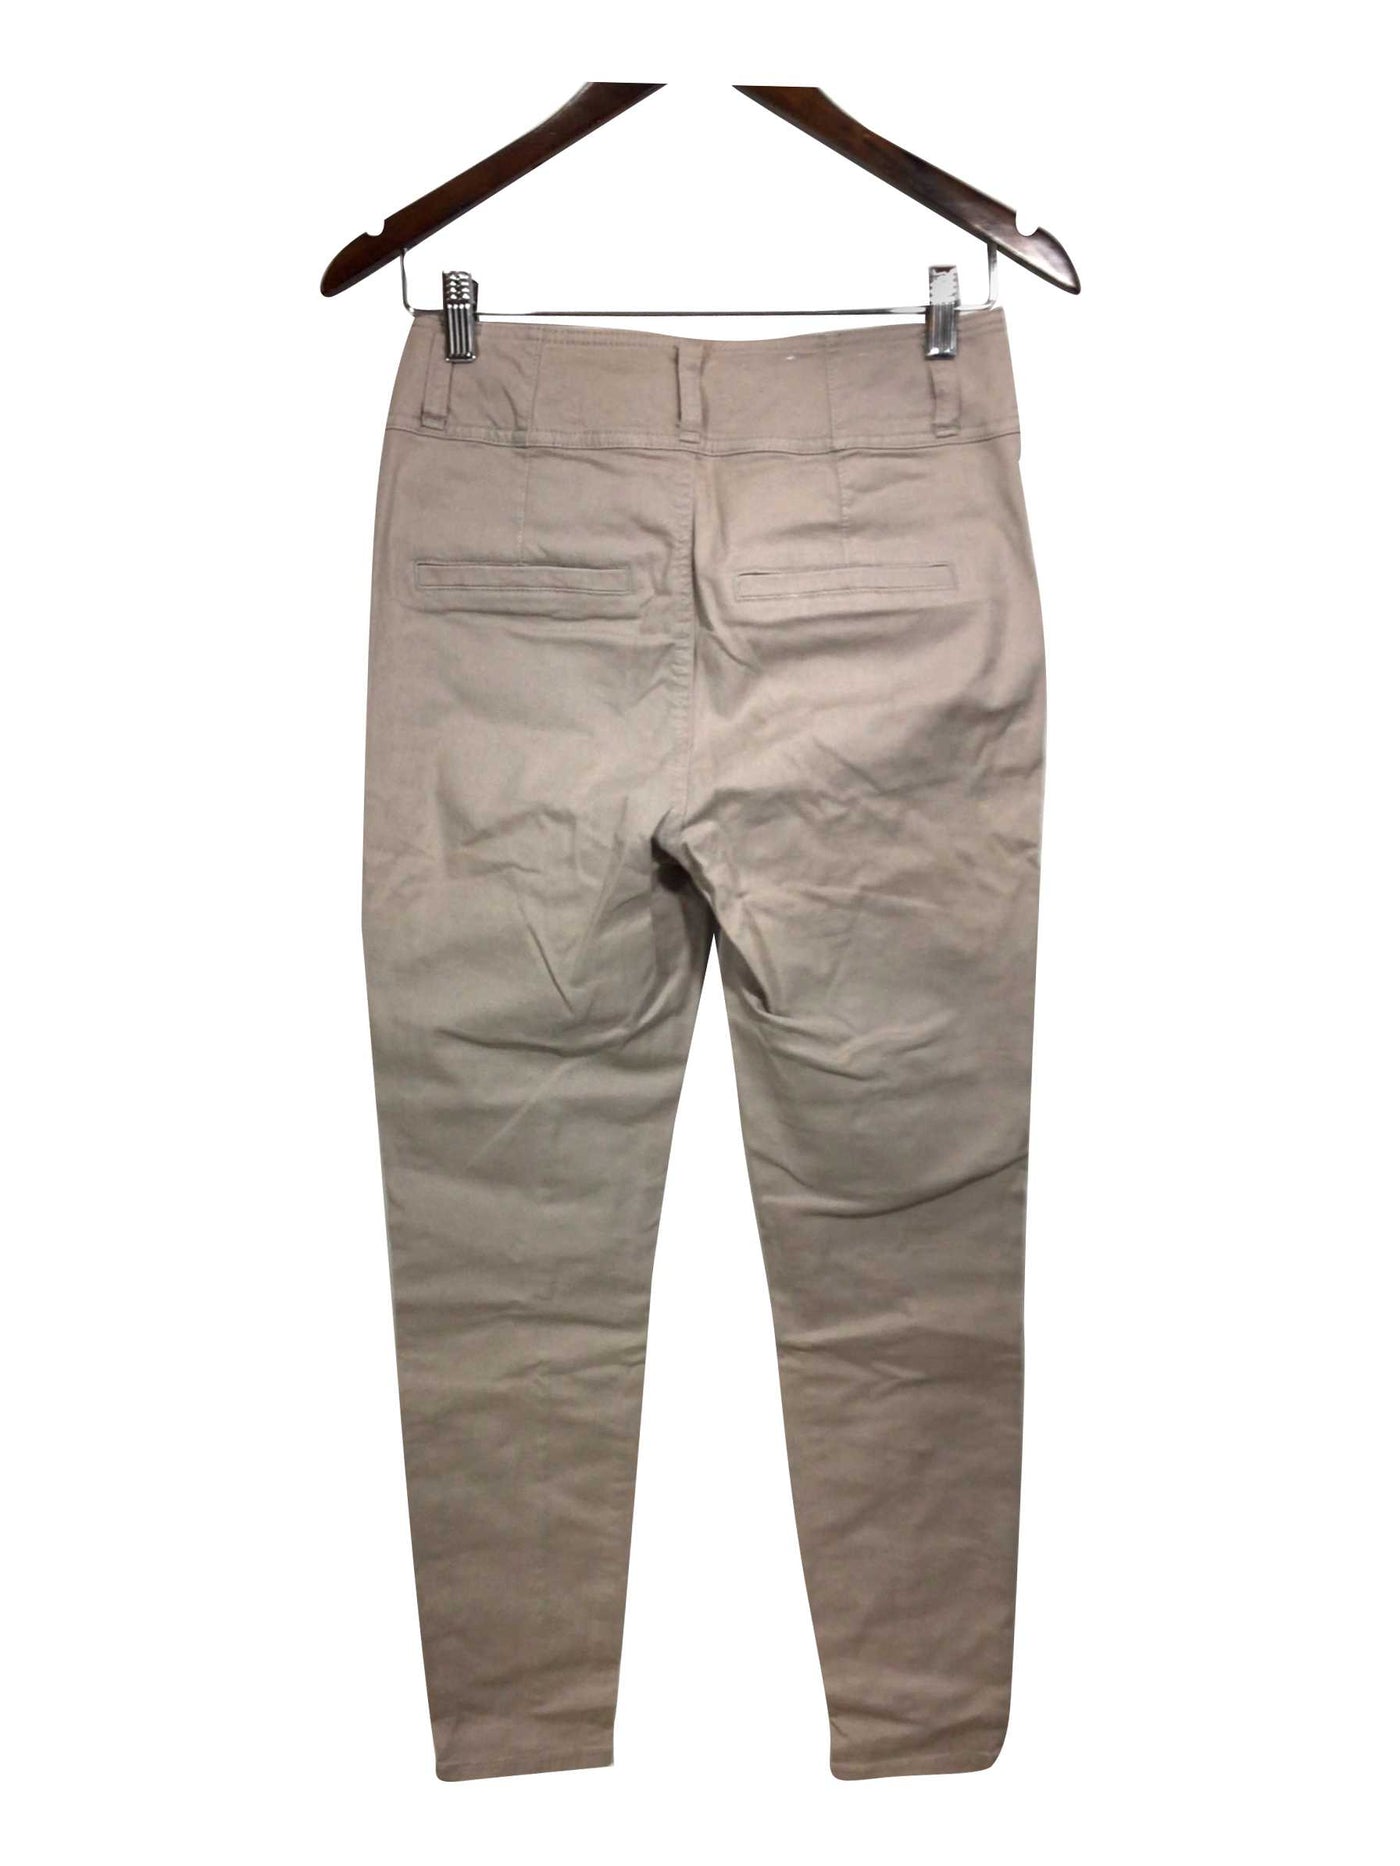 DYNDNM Regular fit Straight-legged Jeans in Beige - Size 27 | 13.45 $ KOOP